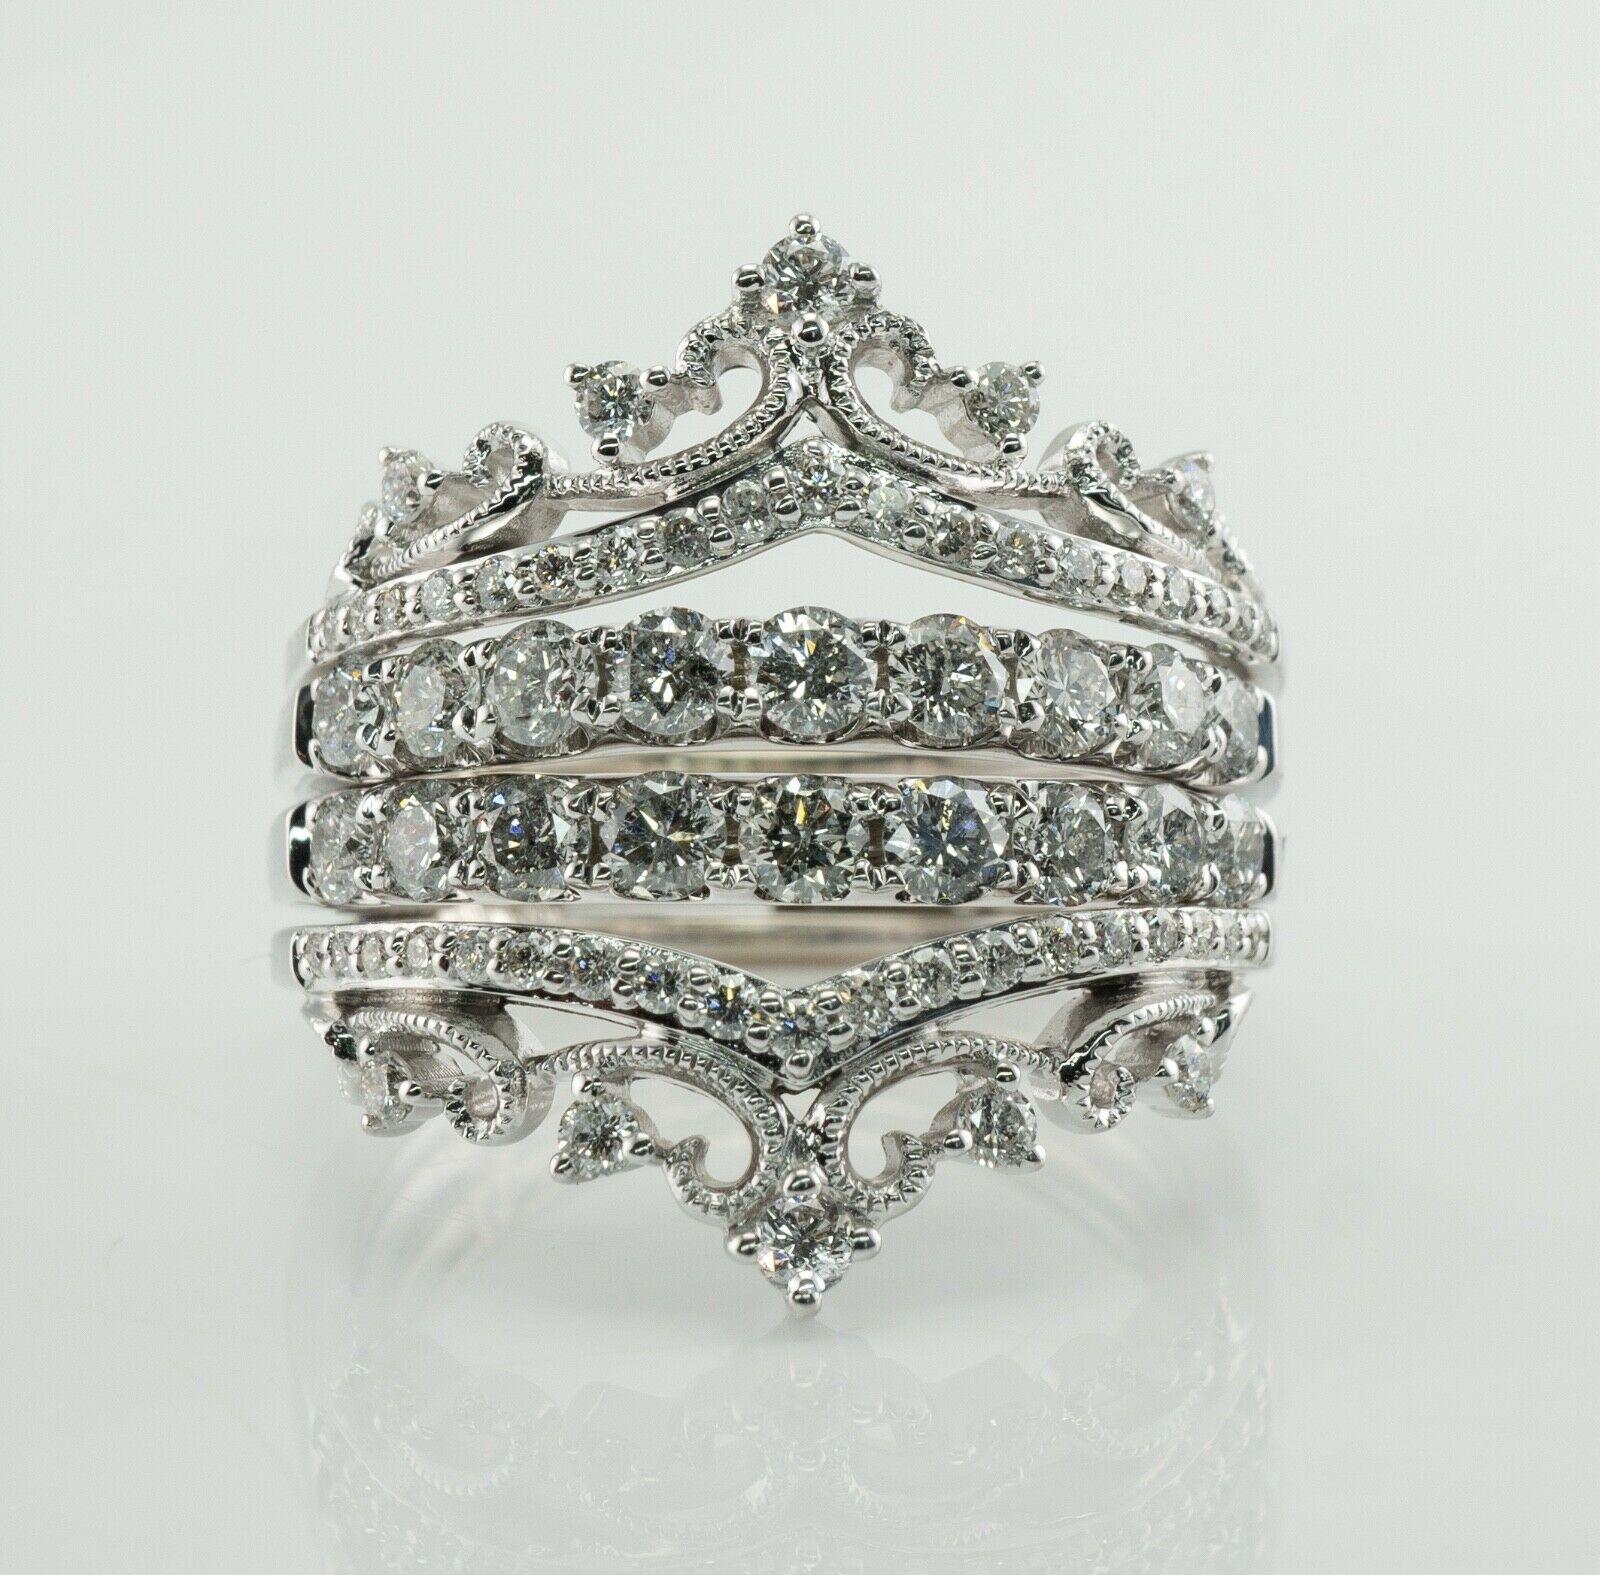 Dieser Ring ist aus massivem 14-karätigem Weißgold gefertigt und hat die Form einer Krone oder eines Diadems.
Der Ring besteht aus 66 Diamanten mit rundem Schliff und einem Gesamtgewicht von 1,75 Karat.
Die Diamanten weisen eine Reinheit von SI2 bis